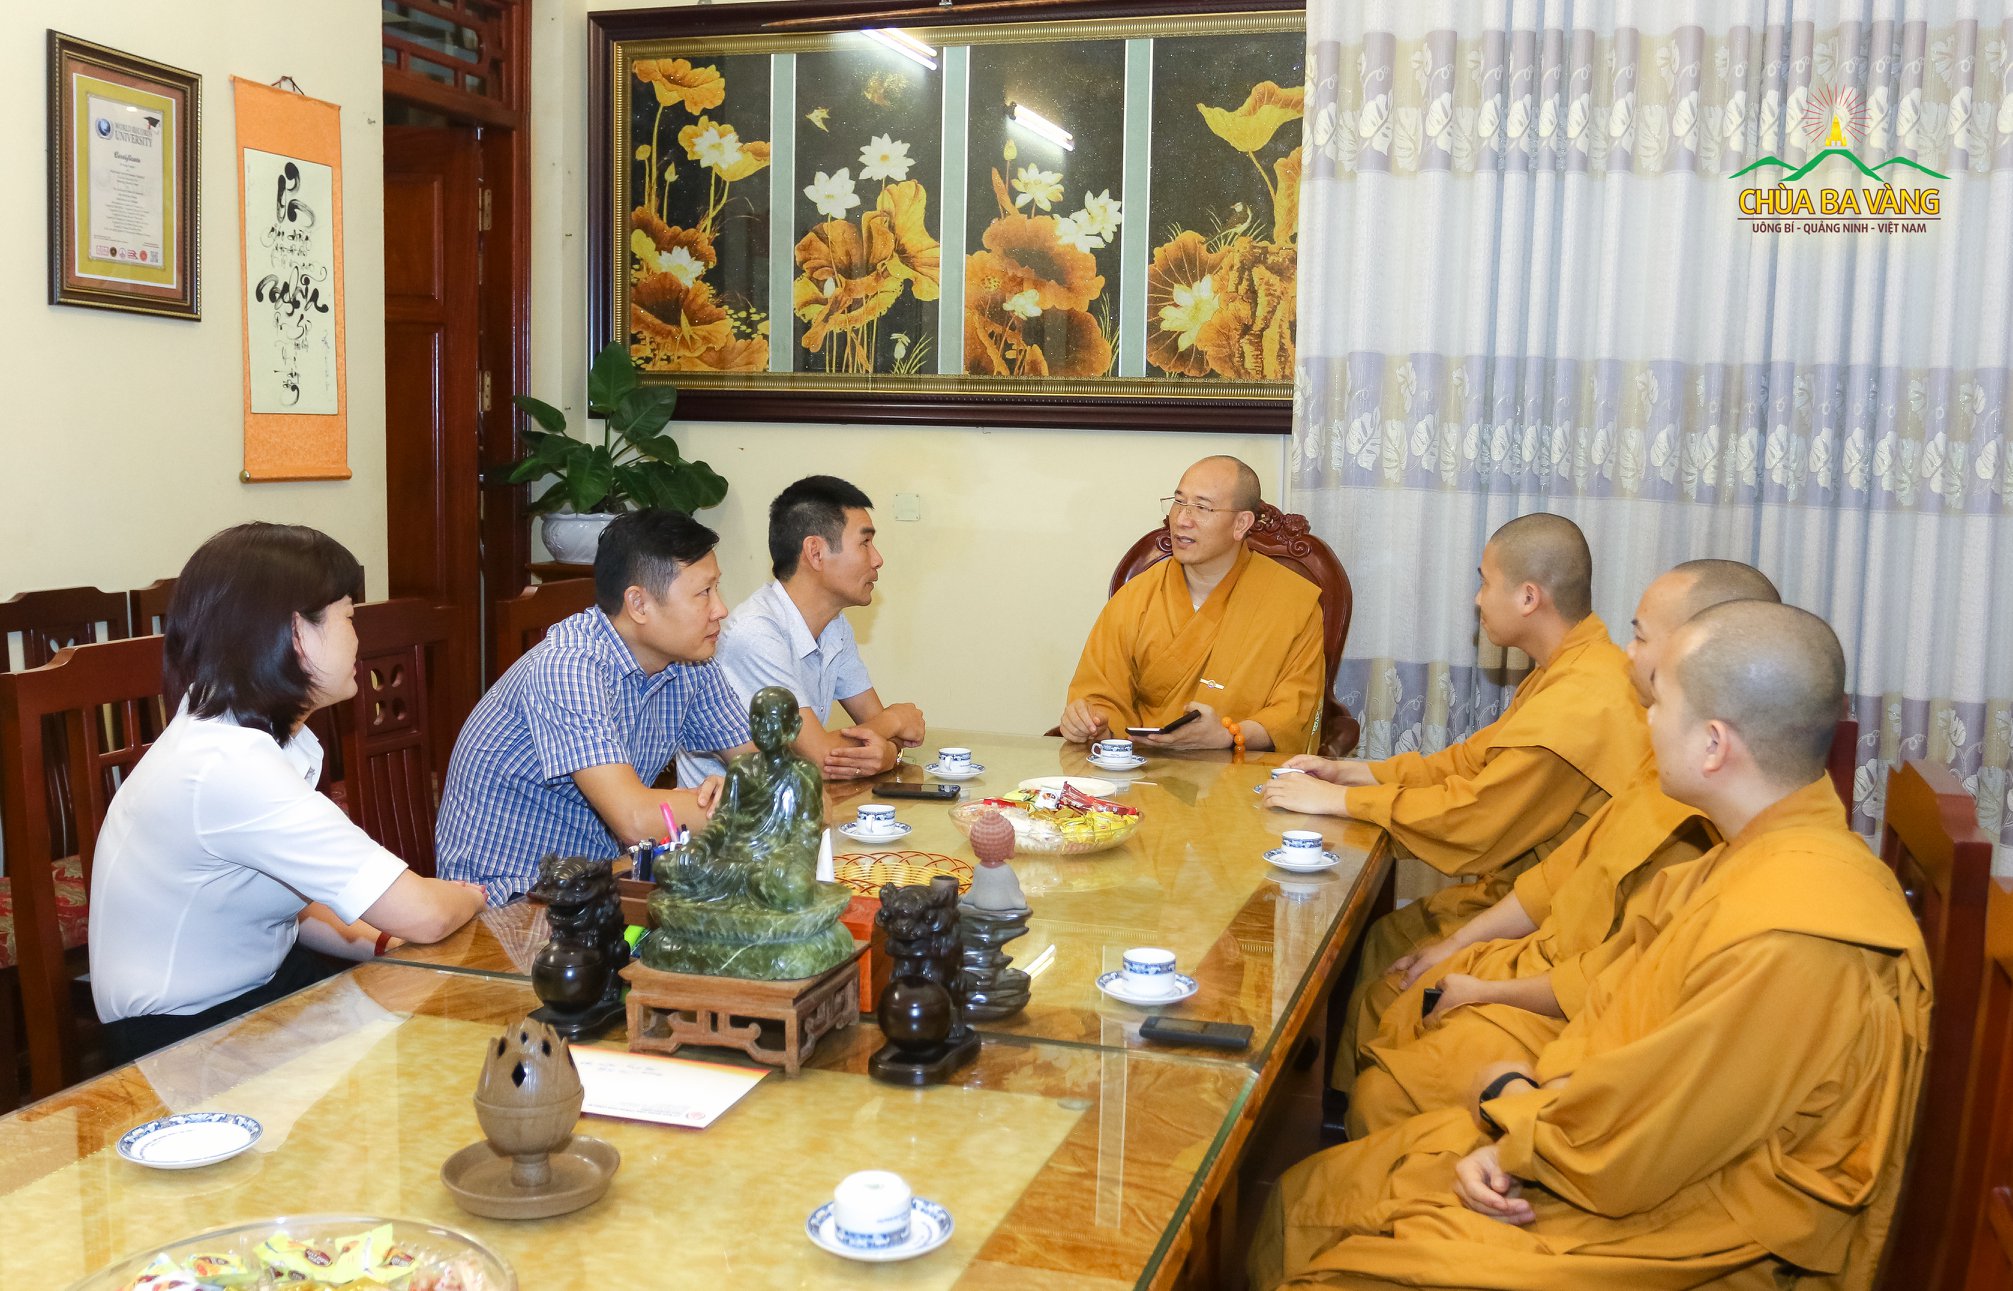 Đại diện lãnh đạo phường Thanh Sơn chúc mừng Phật đản tại chùa Ba Vàng.